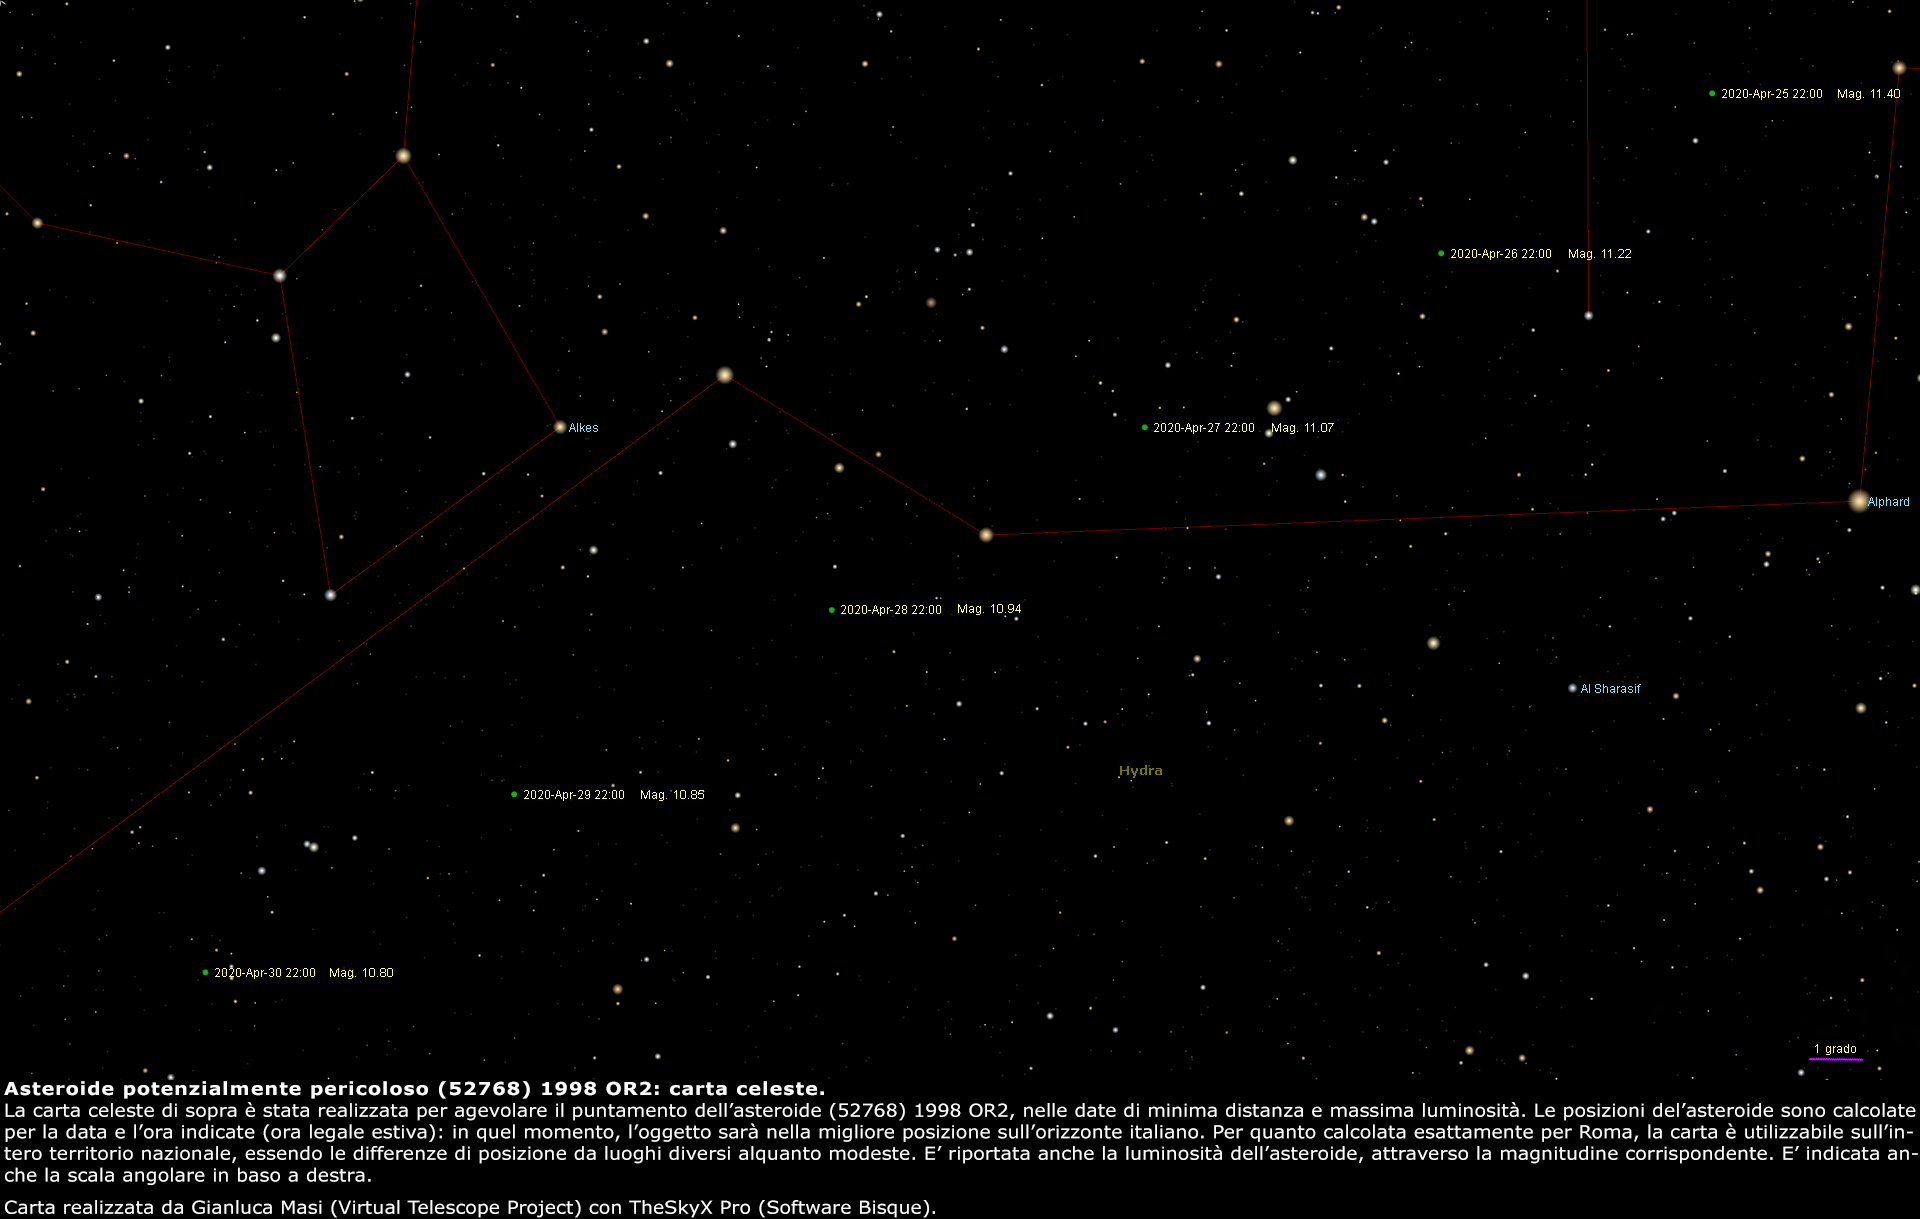 L'asteroide potenzialmente pericoloso (52768) 1998 OR2: percorso tra le stelle